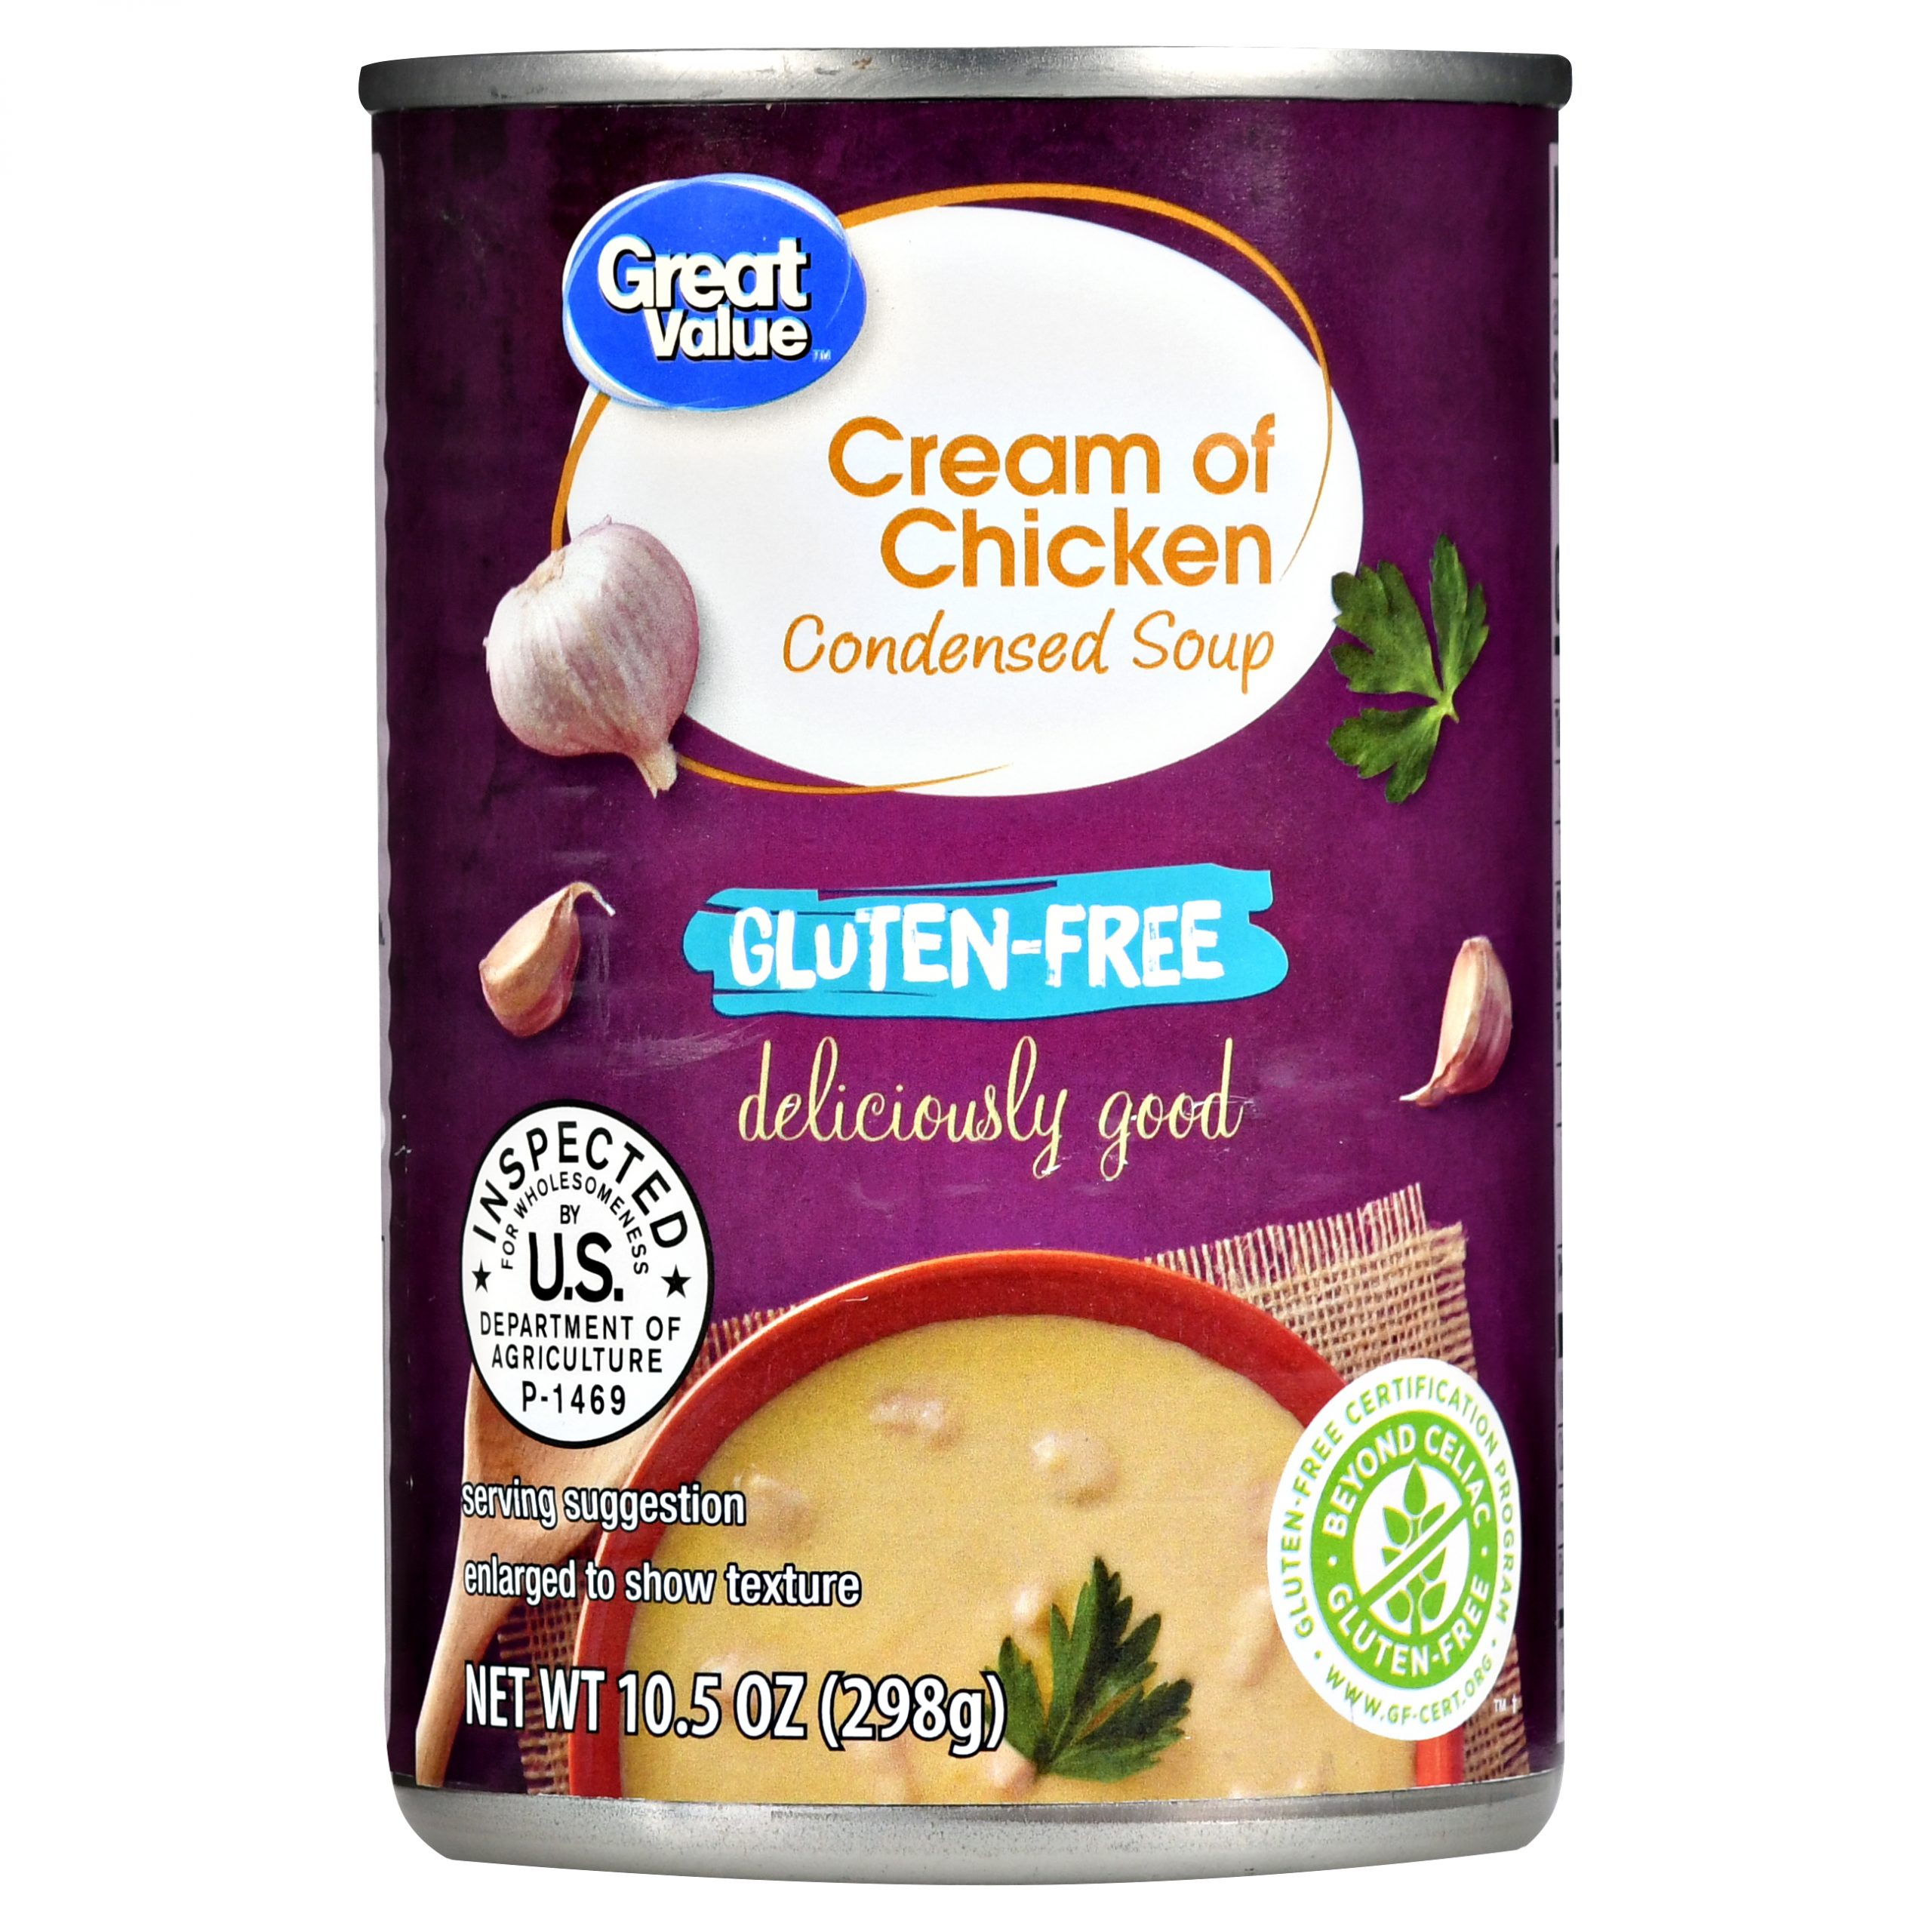 Great Value Gluten Free Cream of Chicken Condensed Soup, 10.5 oz ...